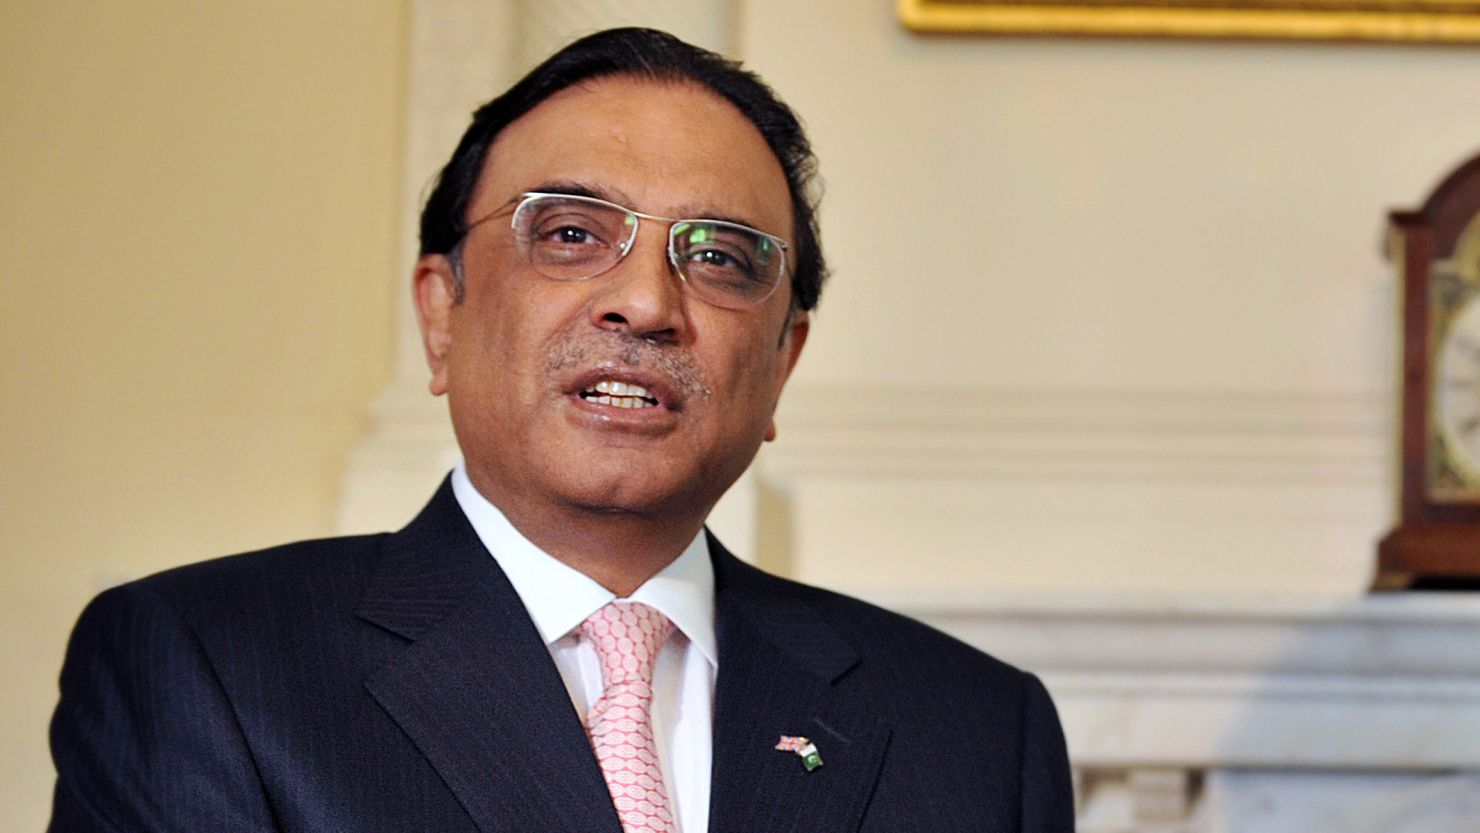 Pakistani President Al Zardari traveled to Dubai to be treated for health problems according to his spokesman